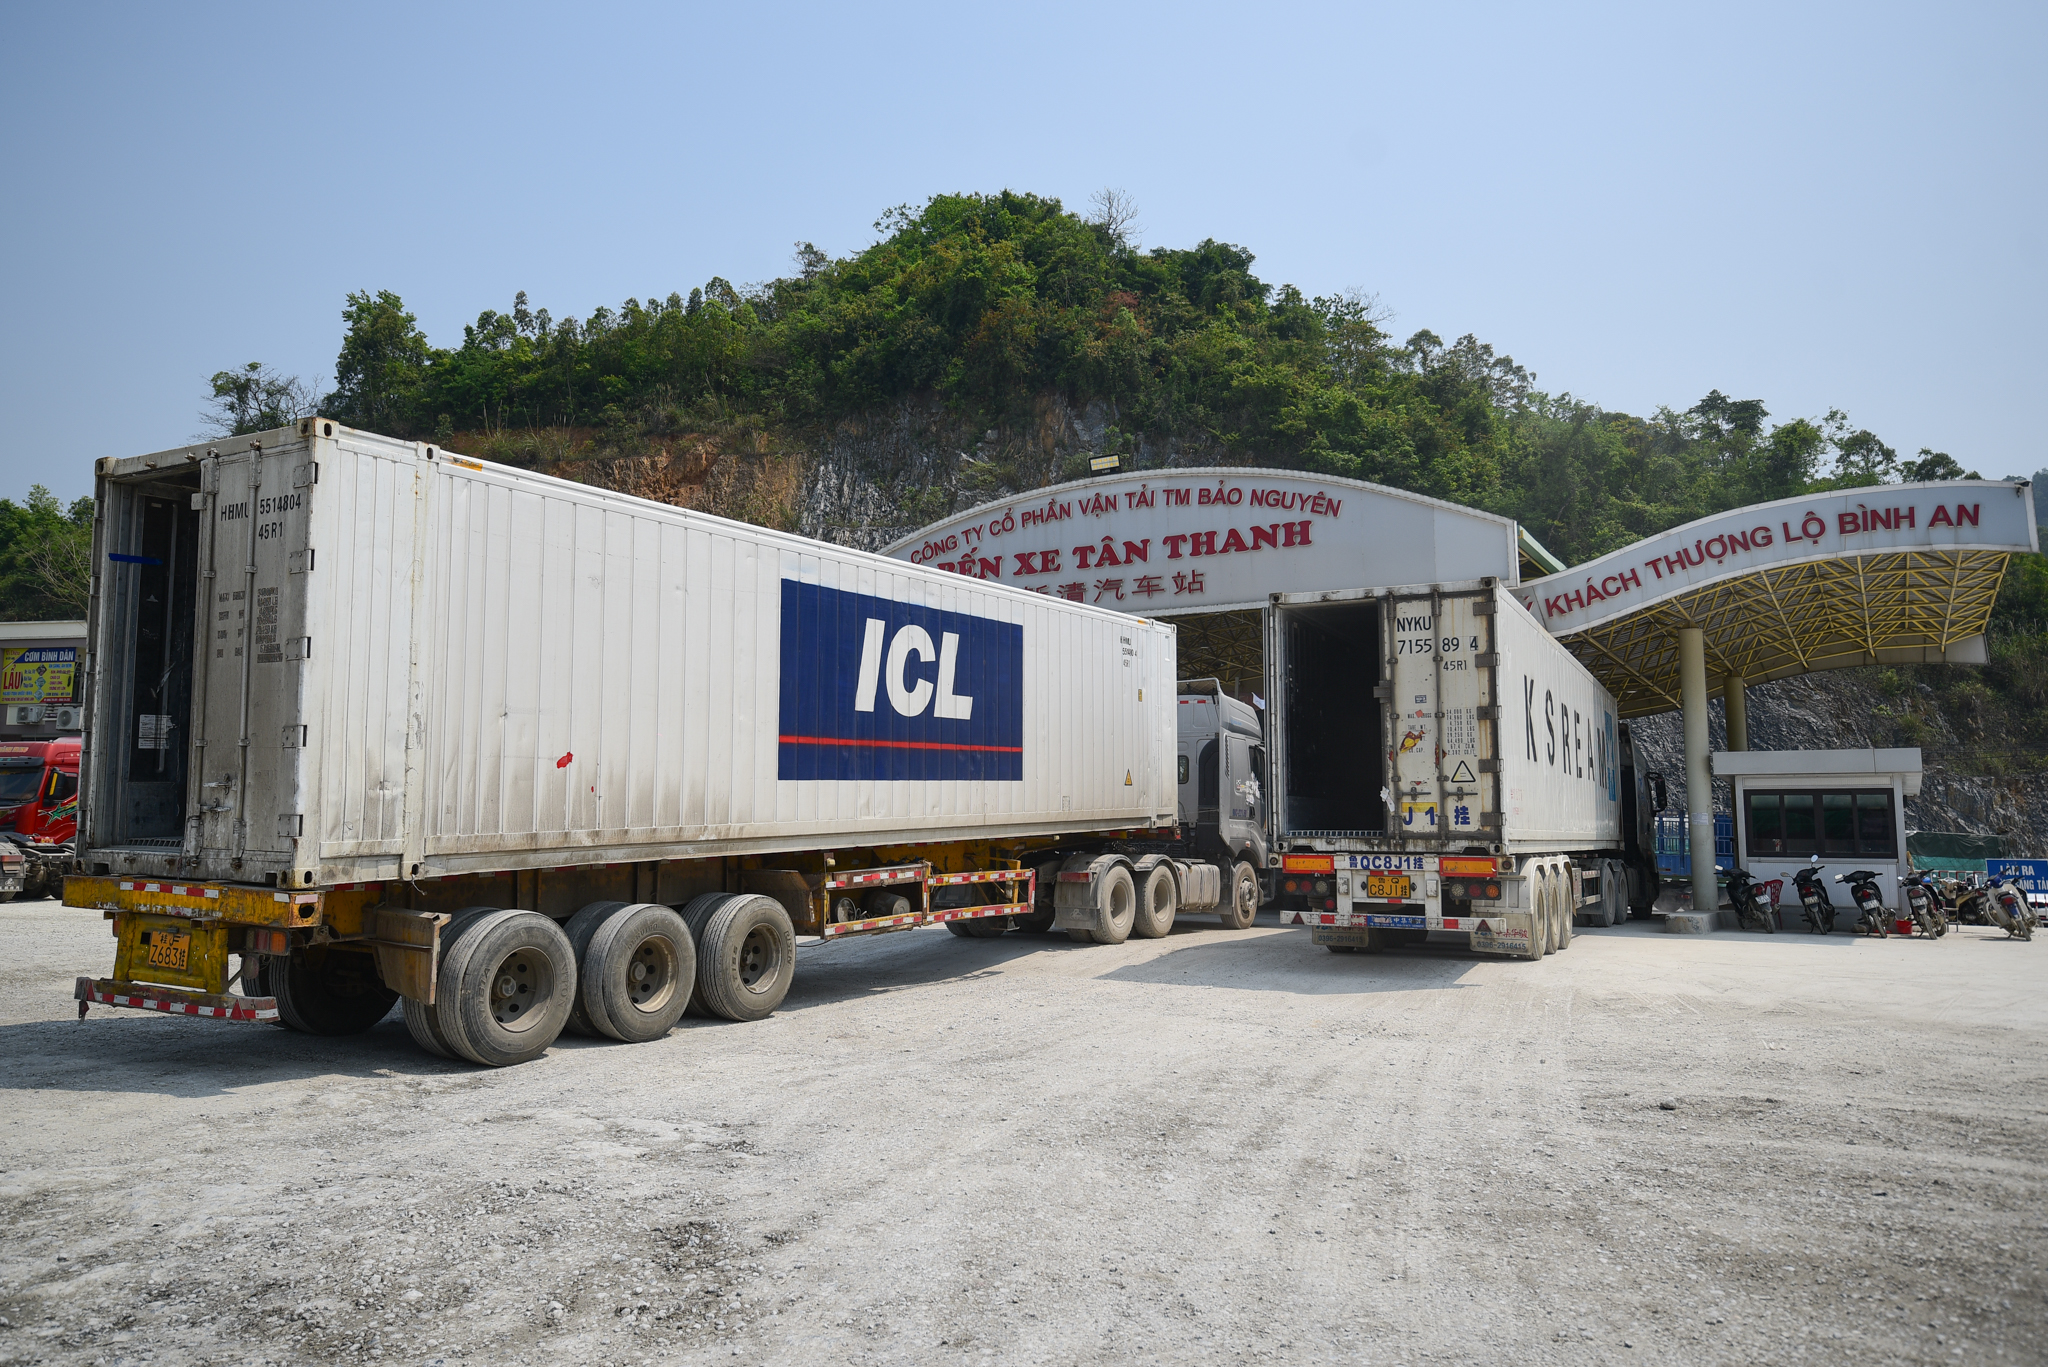 Ngày 28/1 (mùng 7 Tết), có 259 xe xuất khẩu qua các cửa khẩu ở Lạng Sơn, trong đó có 230 xe hoa quả. Ảnh: Tùng Đinh.